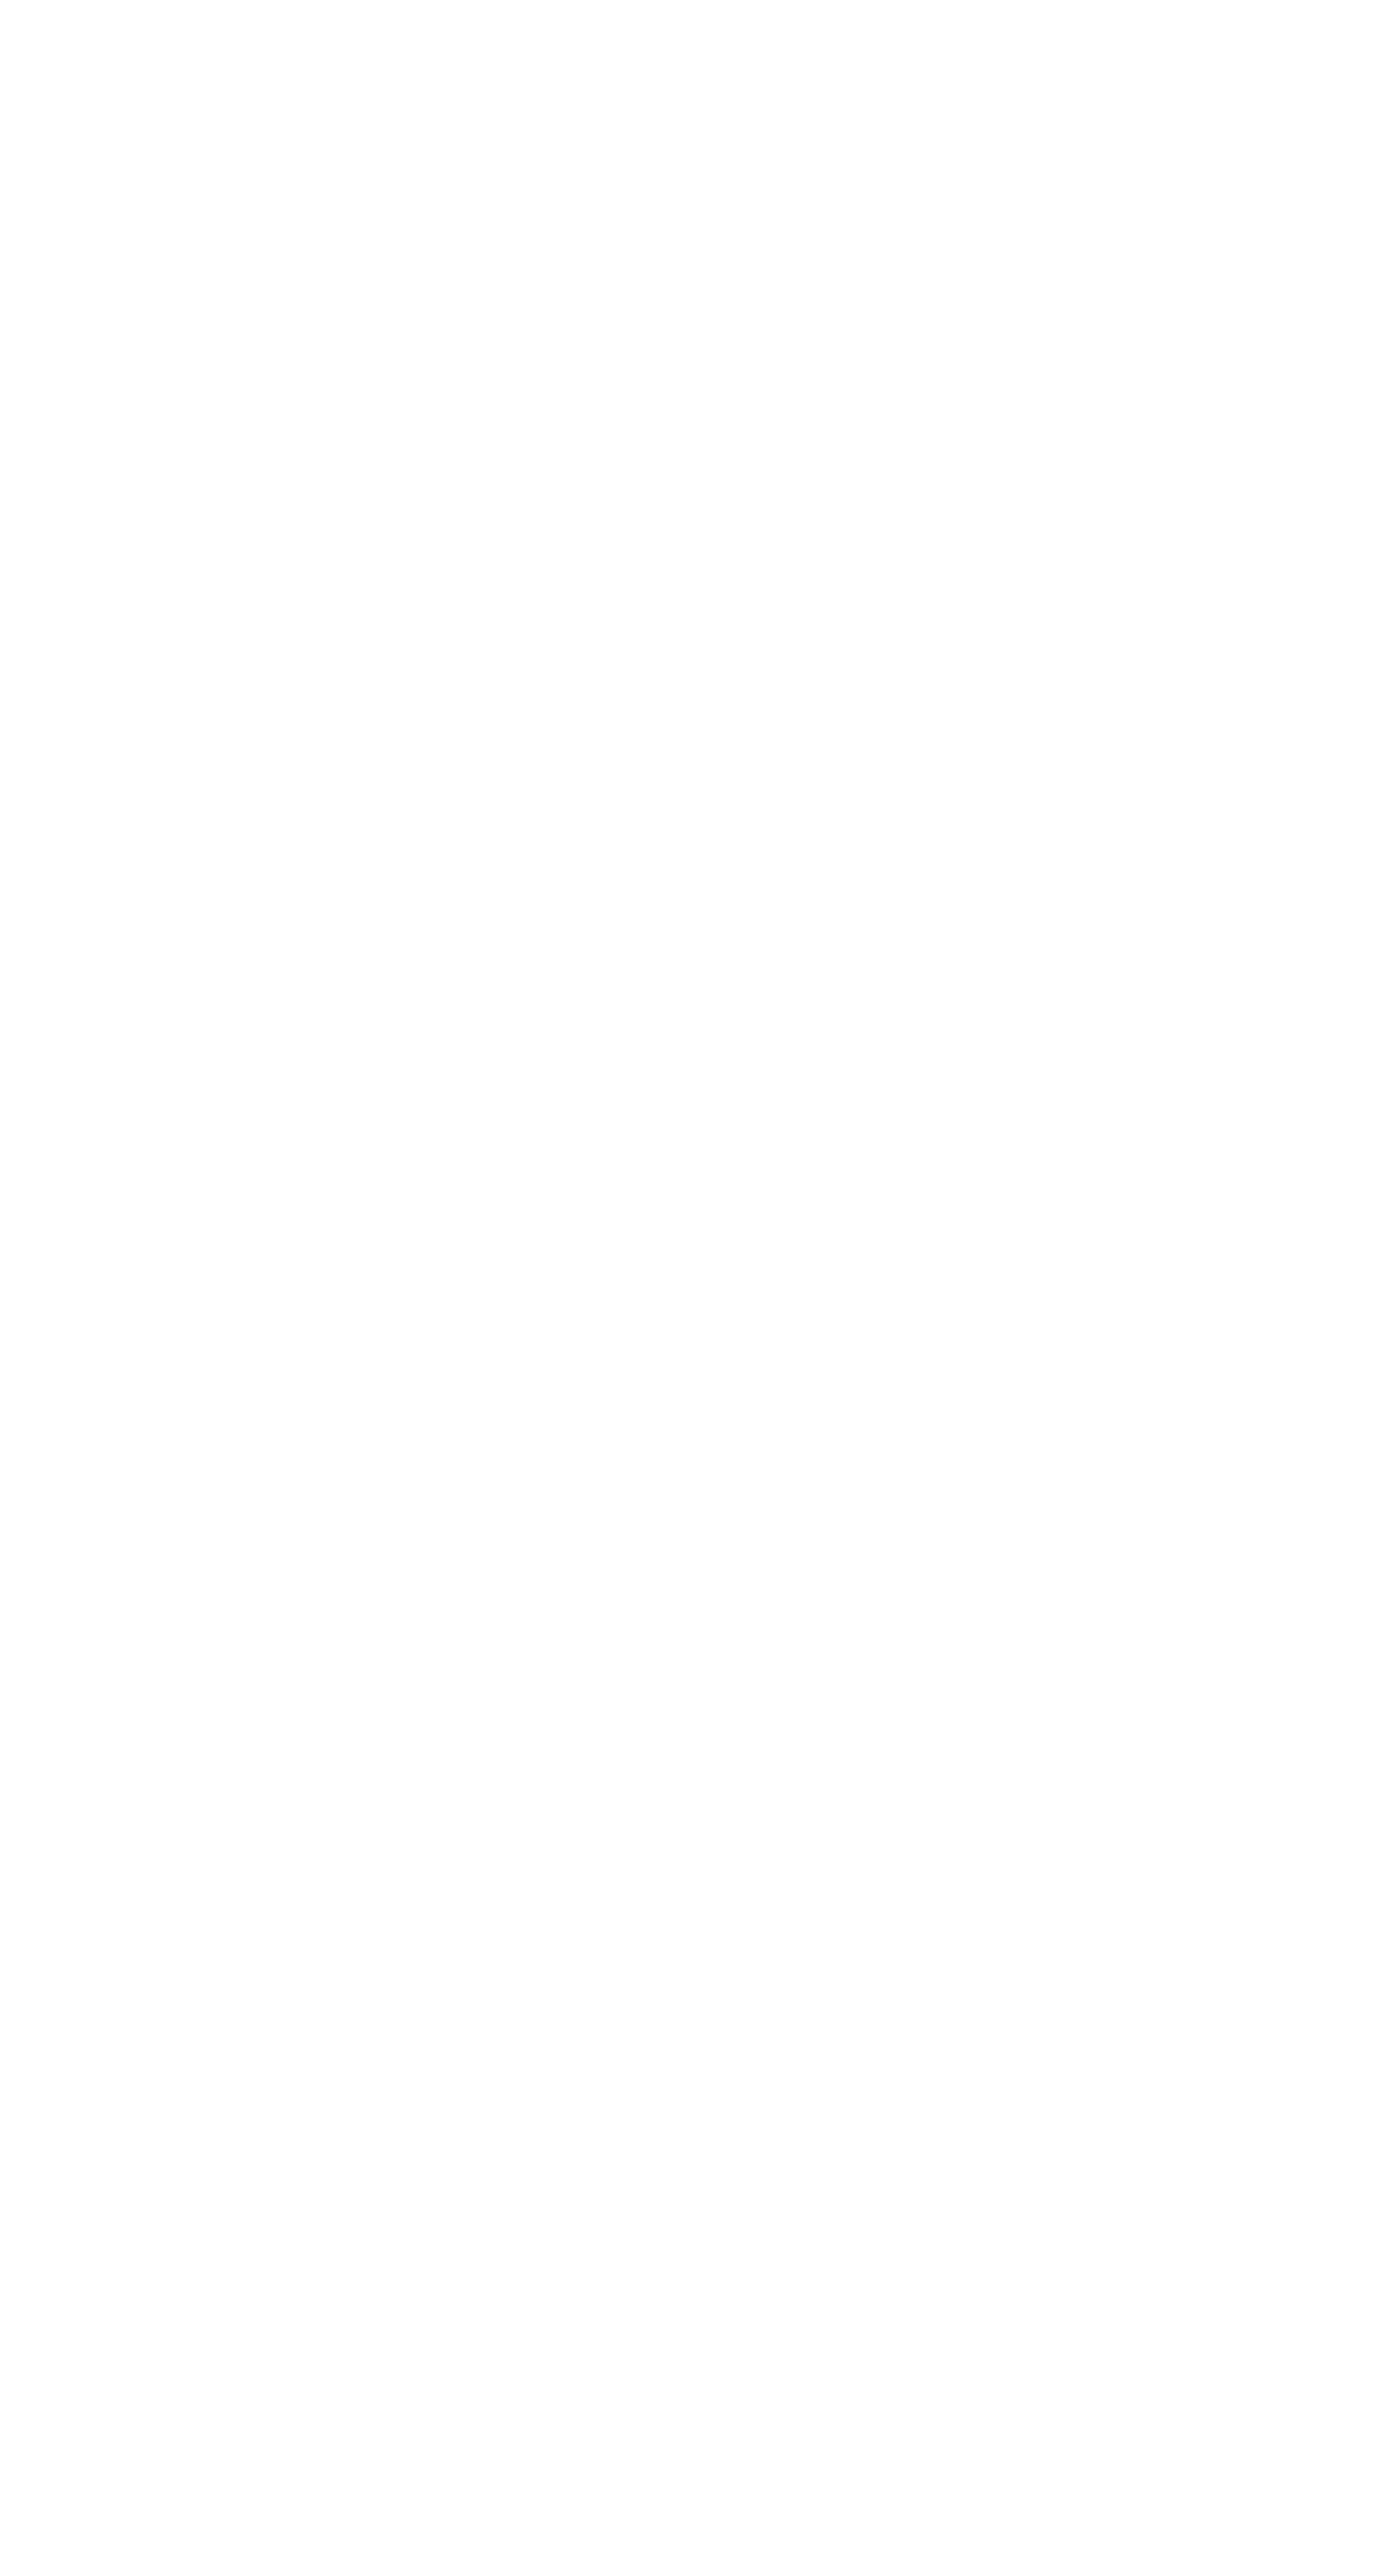 Pattern d'illustration en forme de flèche vers la droite du herobanner